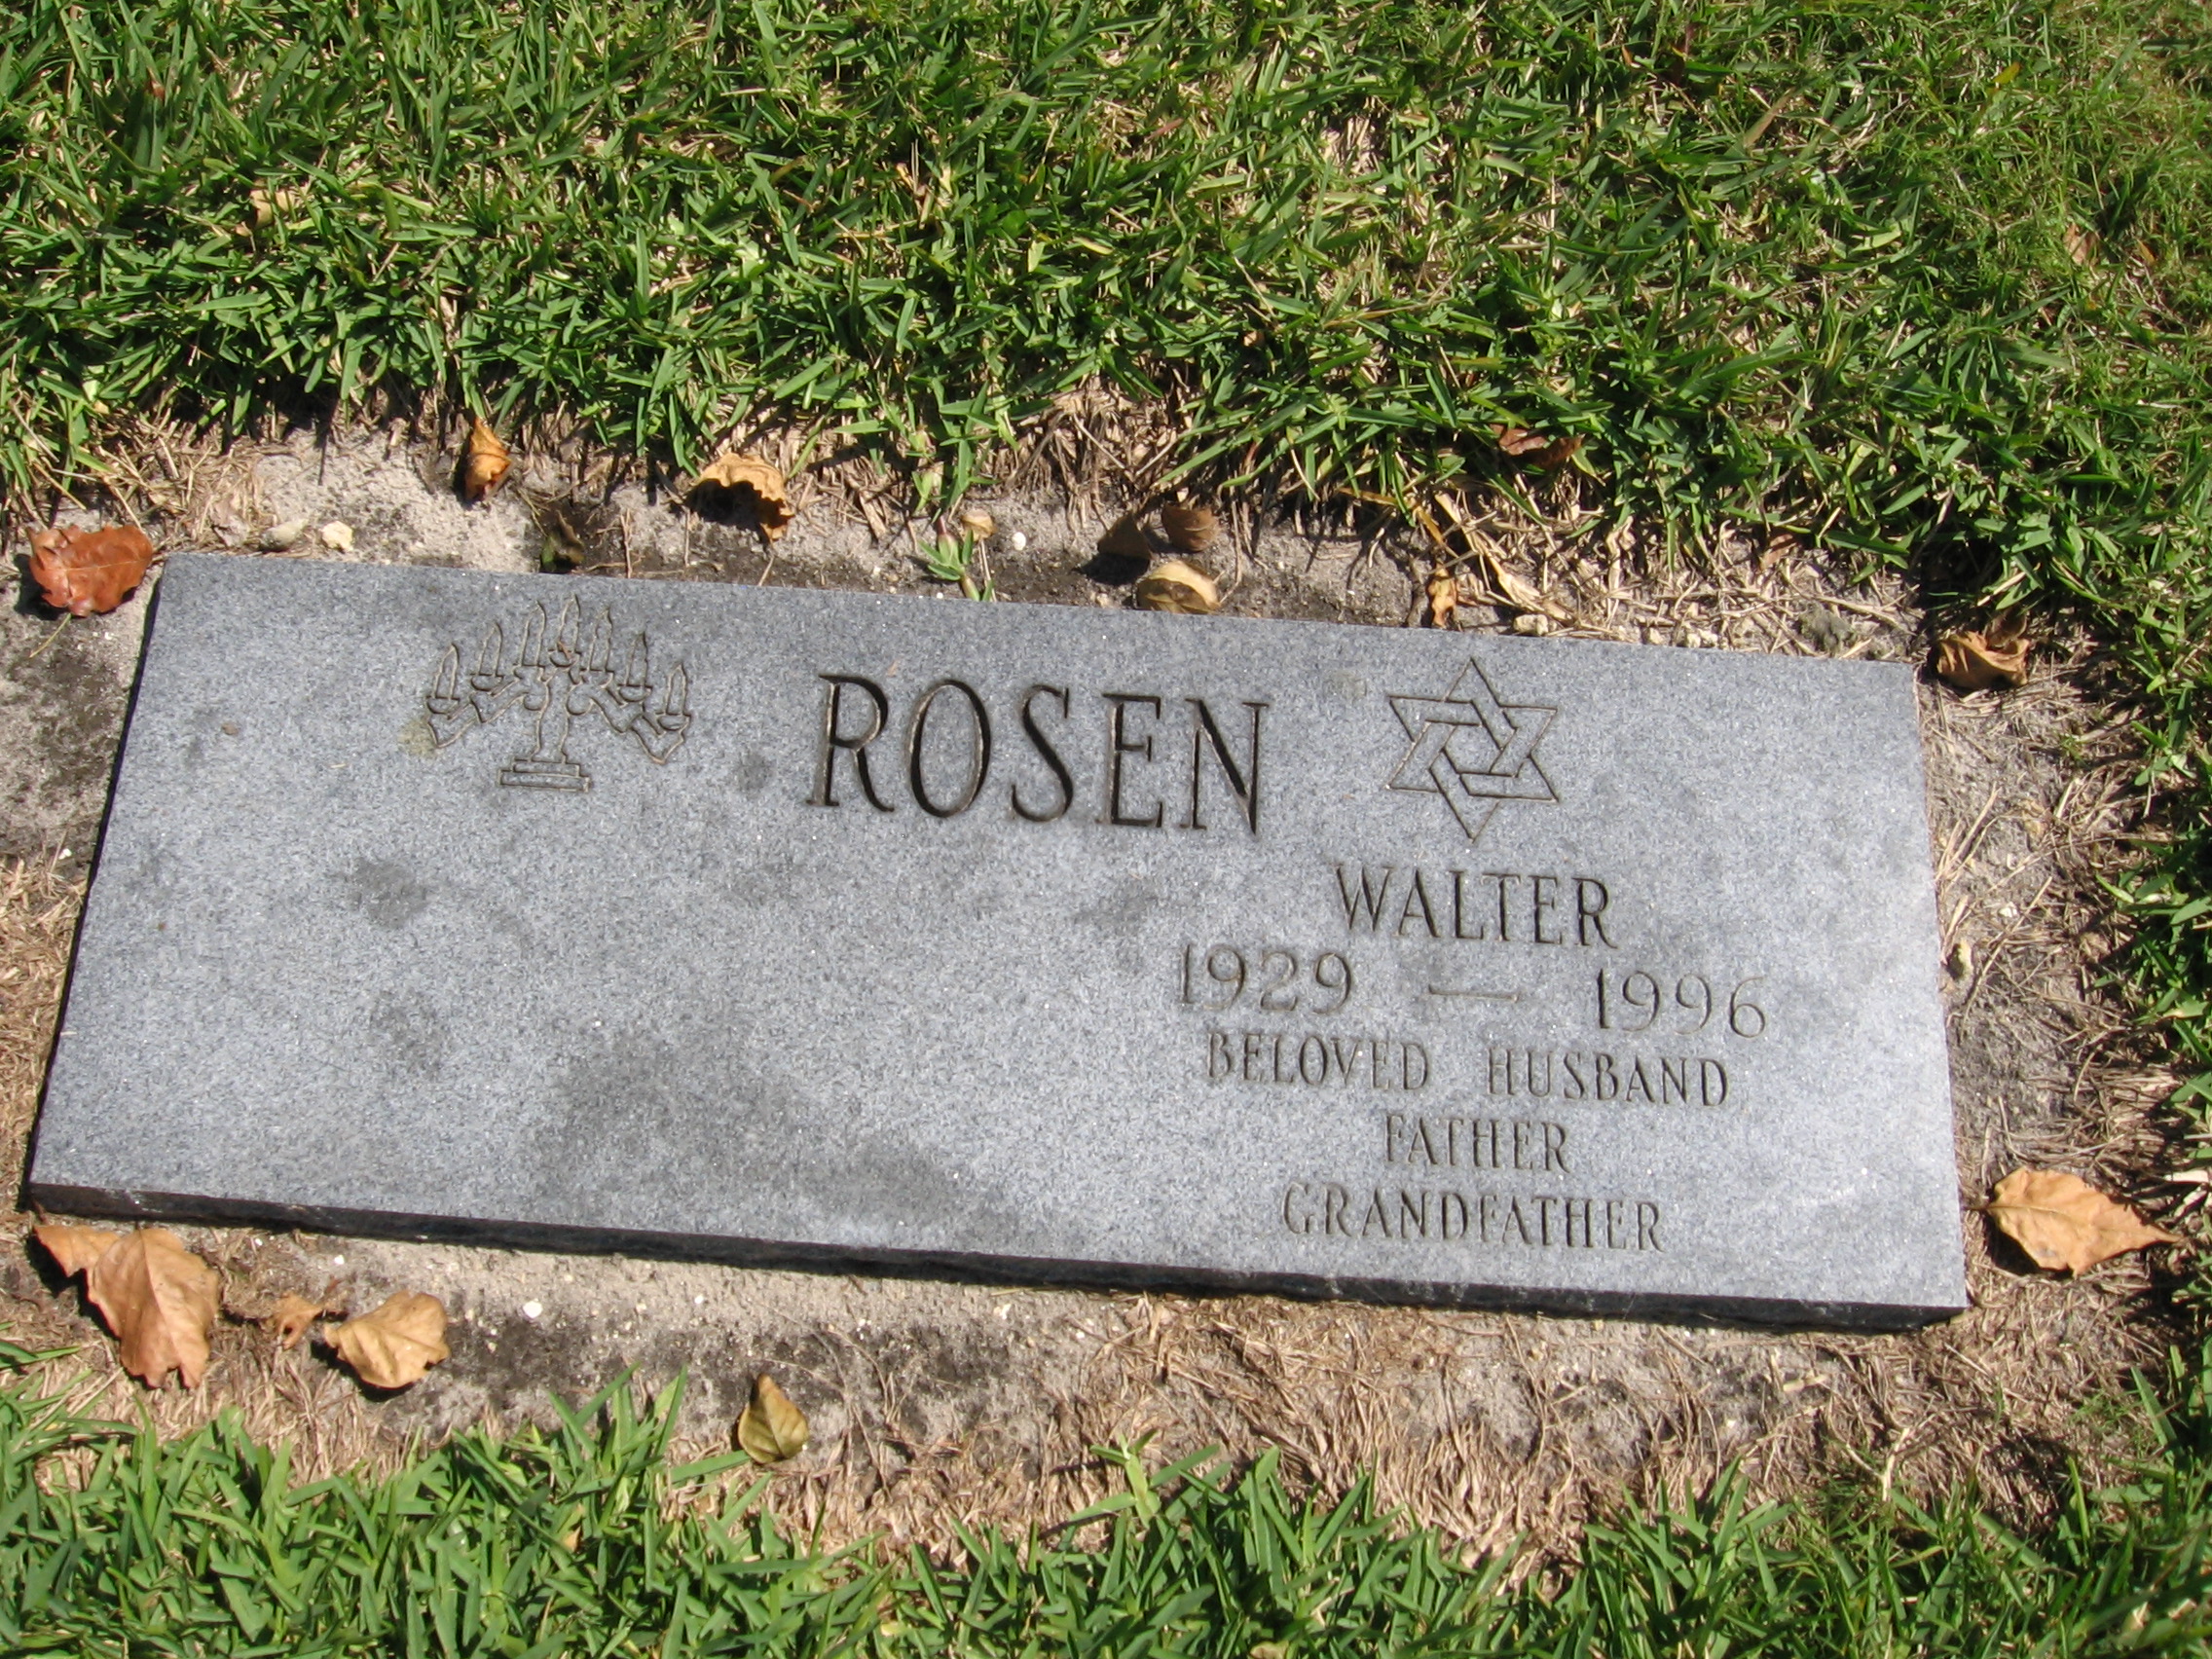 Walter Rosen